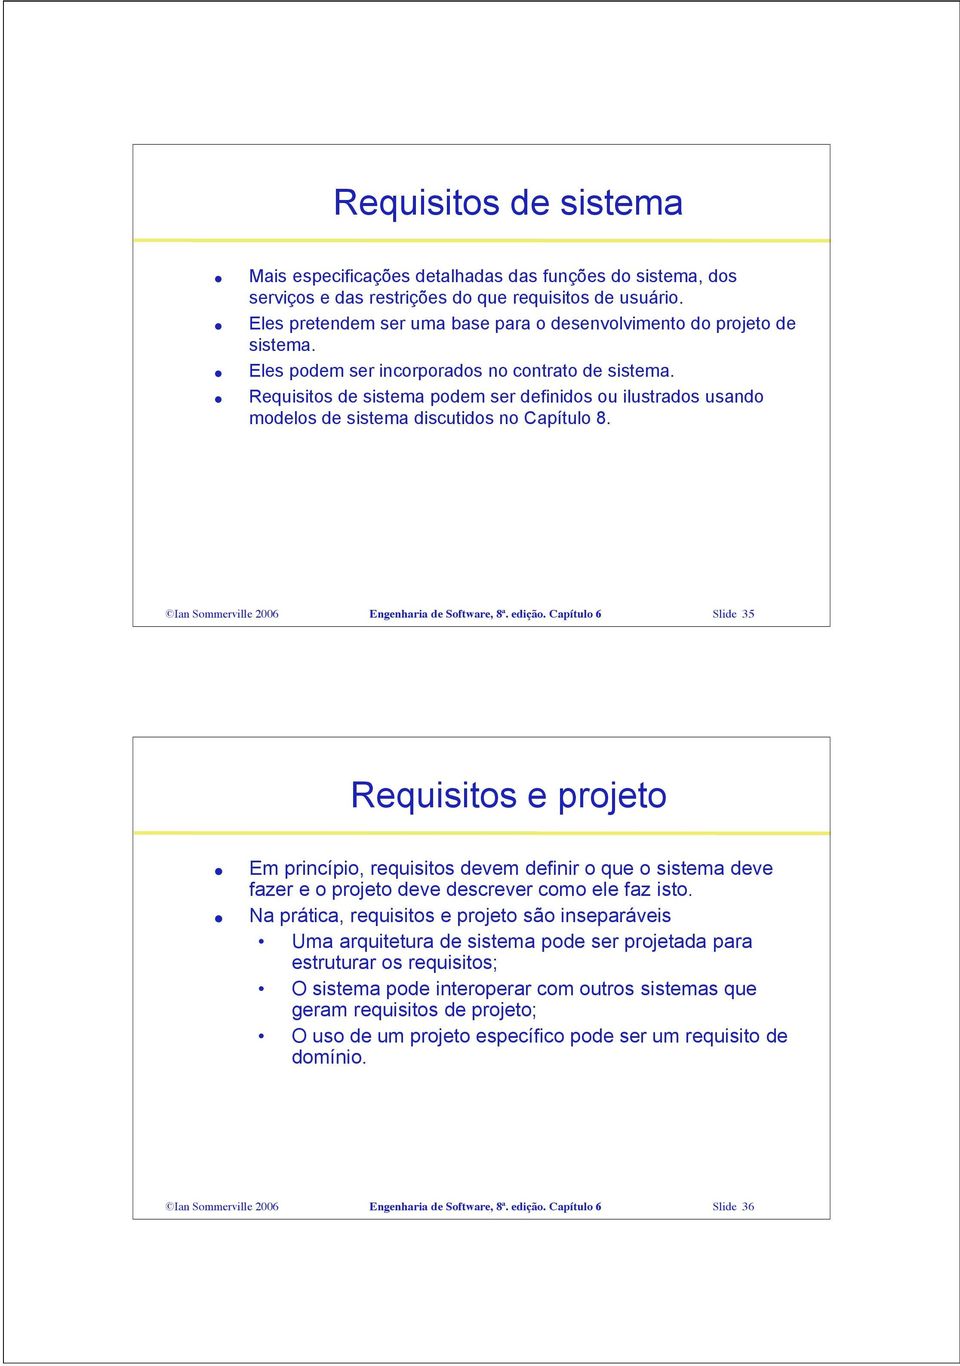 Requisitos de sistema podem ser definidos ou ilustrados usando modelos de sistema discutidos no Capítulo 8. Ian Sommerville 2006 Engenharia de Software, 8ª. edição.